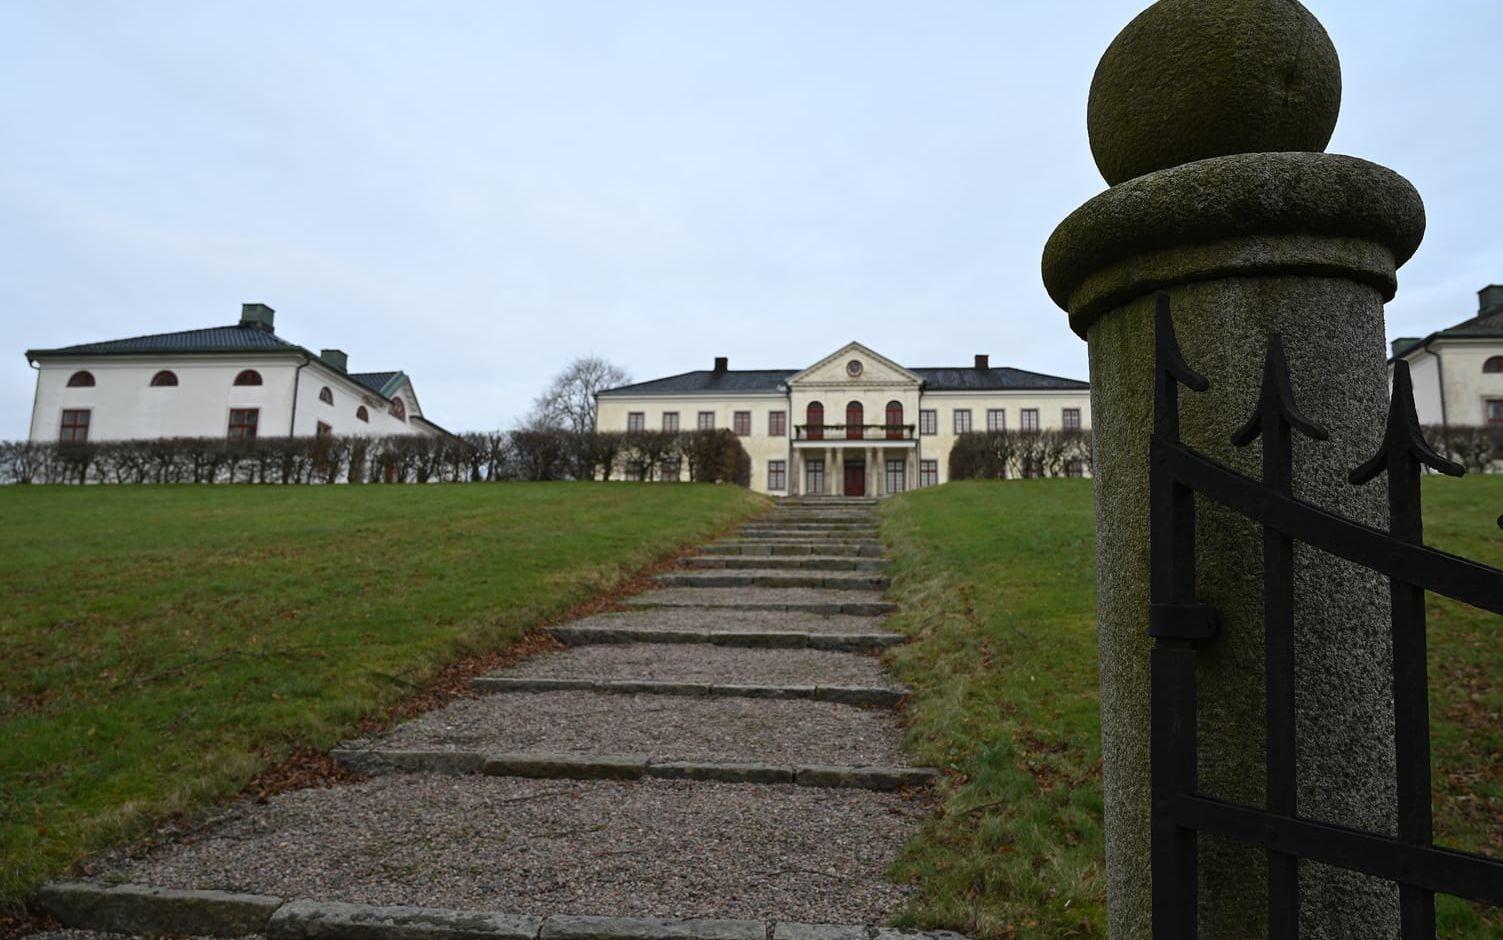 Nääs slott är Lerums kommuns stolthet och största kulturhistoriska turistattraktion.